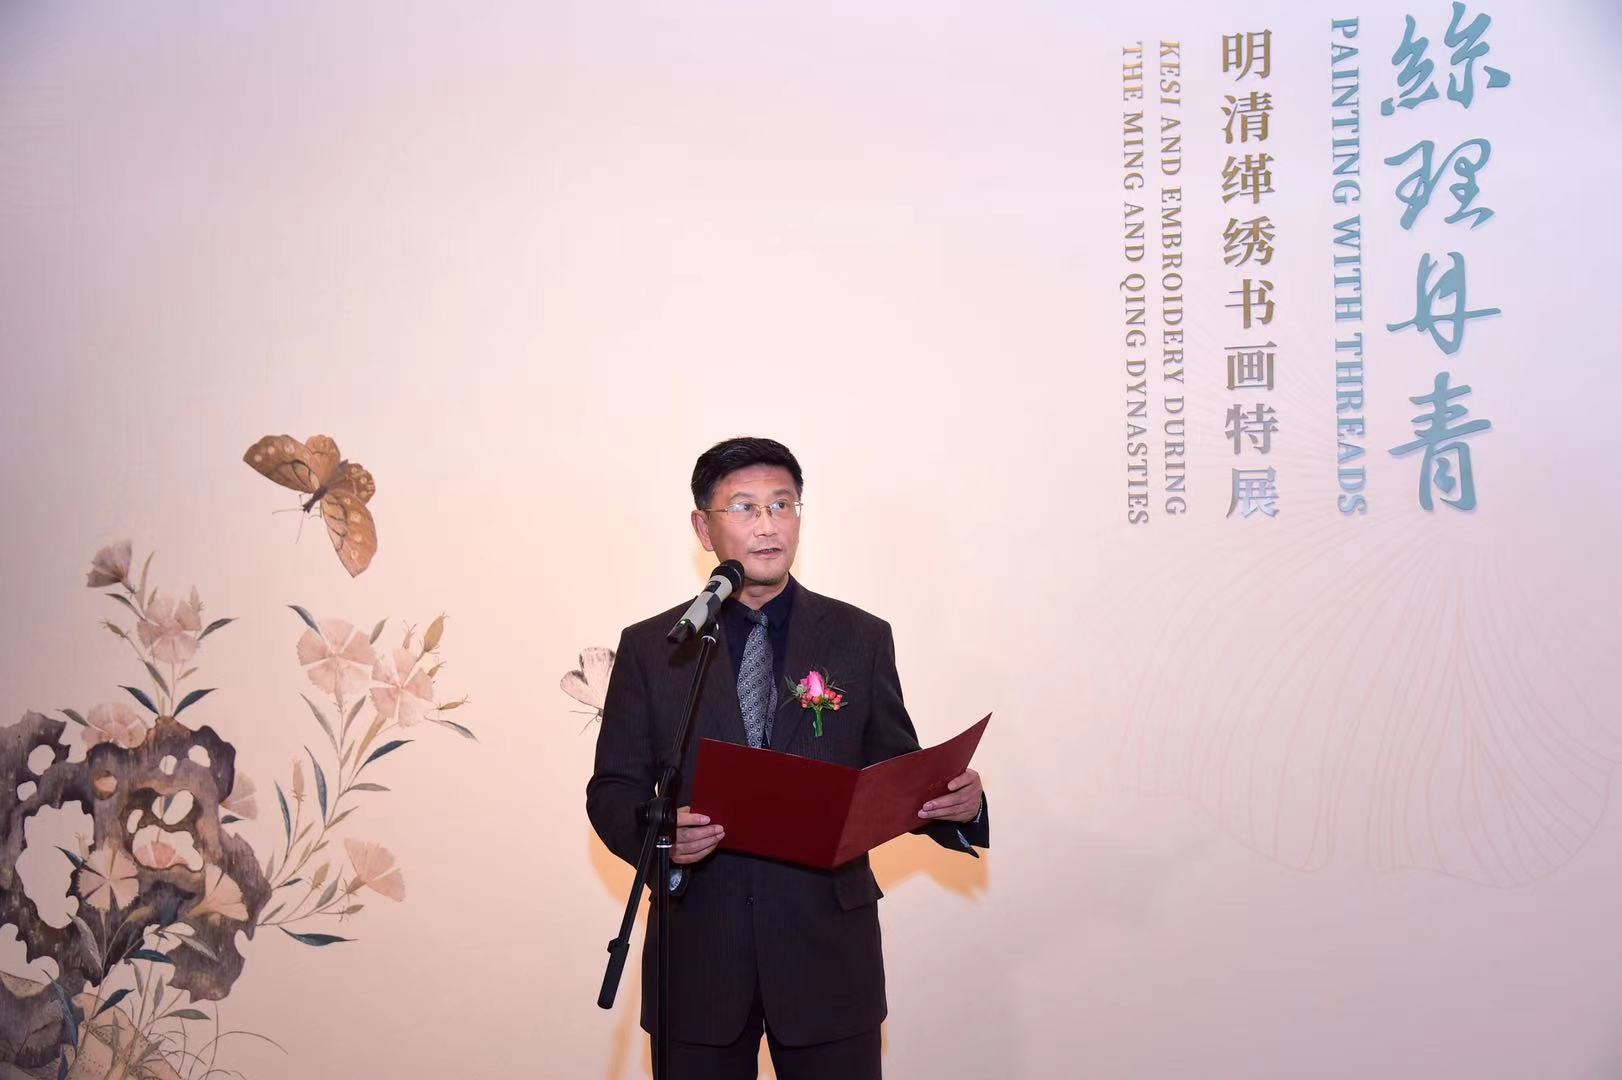 展览开幕现场 上海博物馆馆长杨志刚讲话